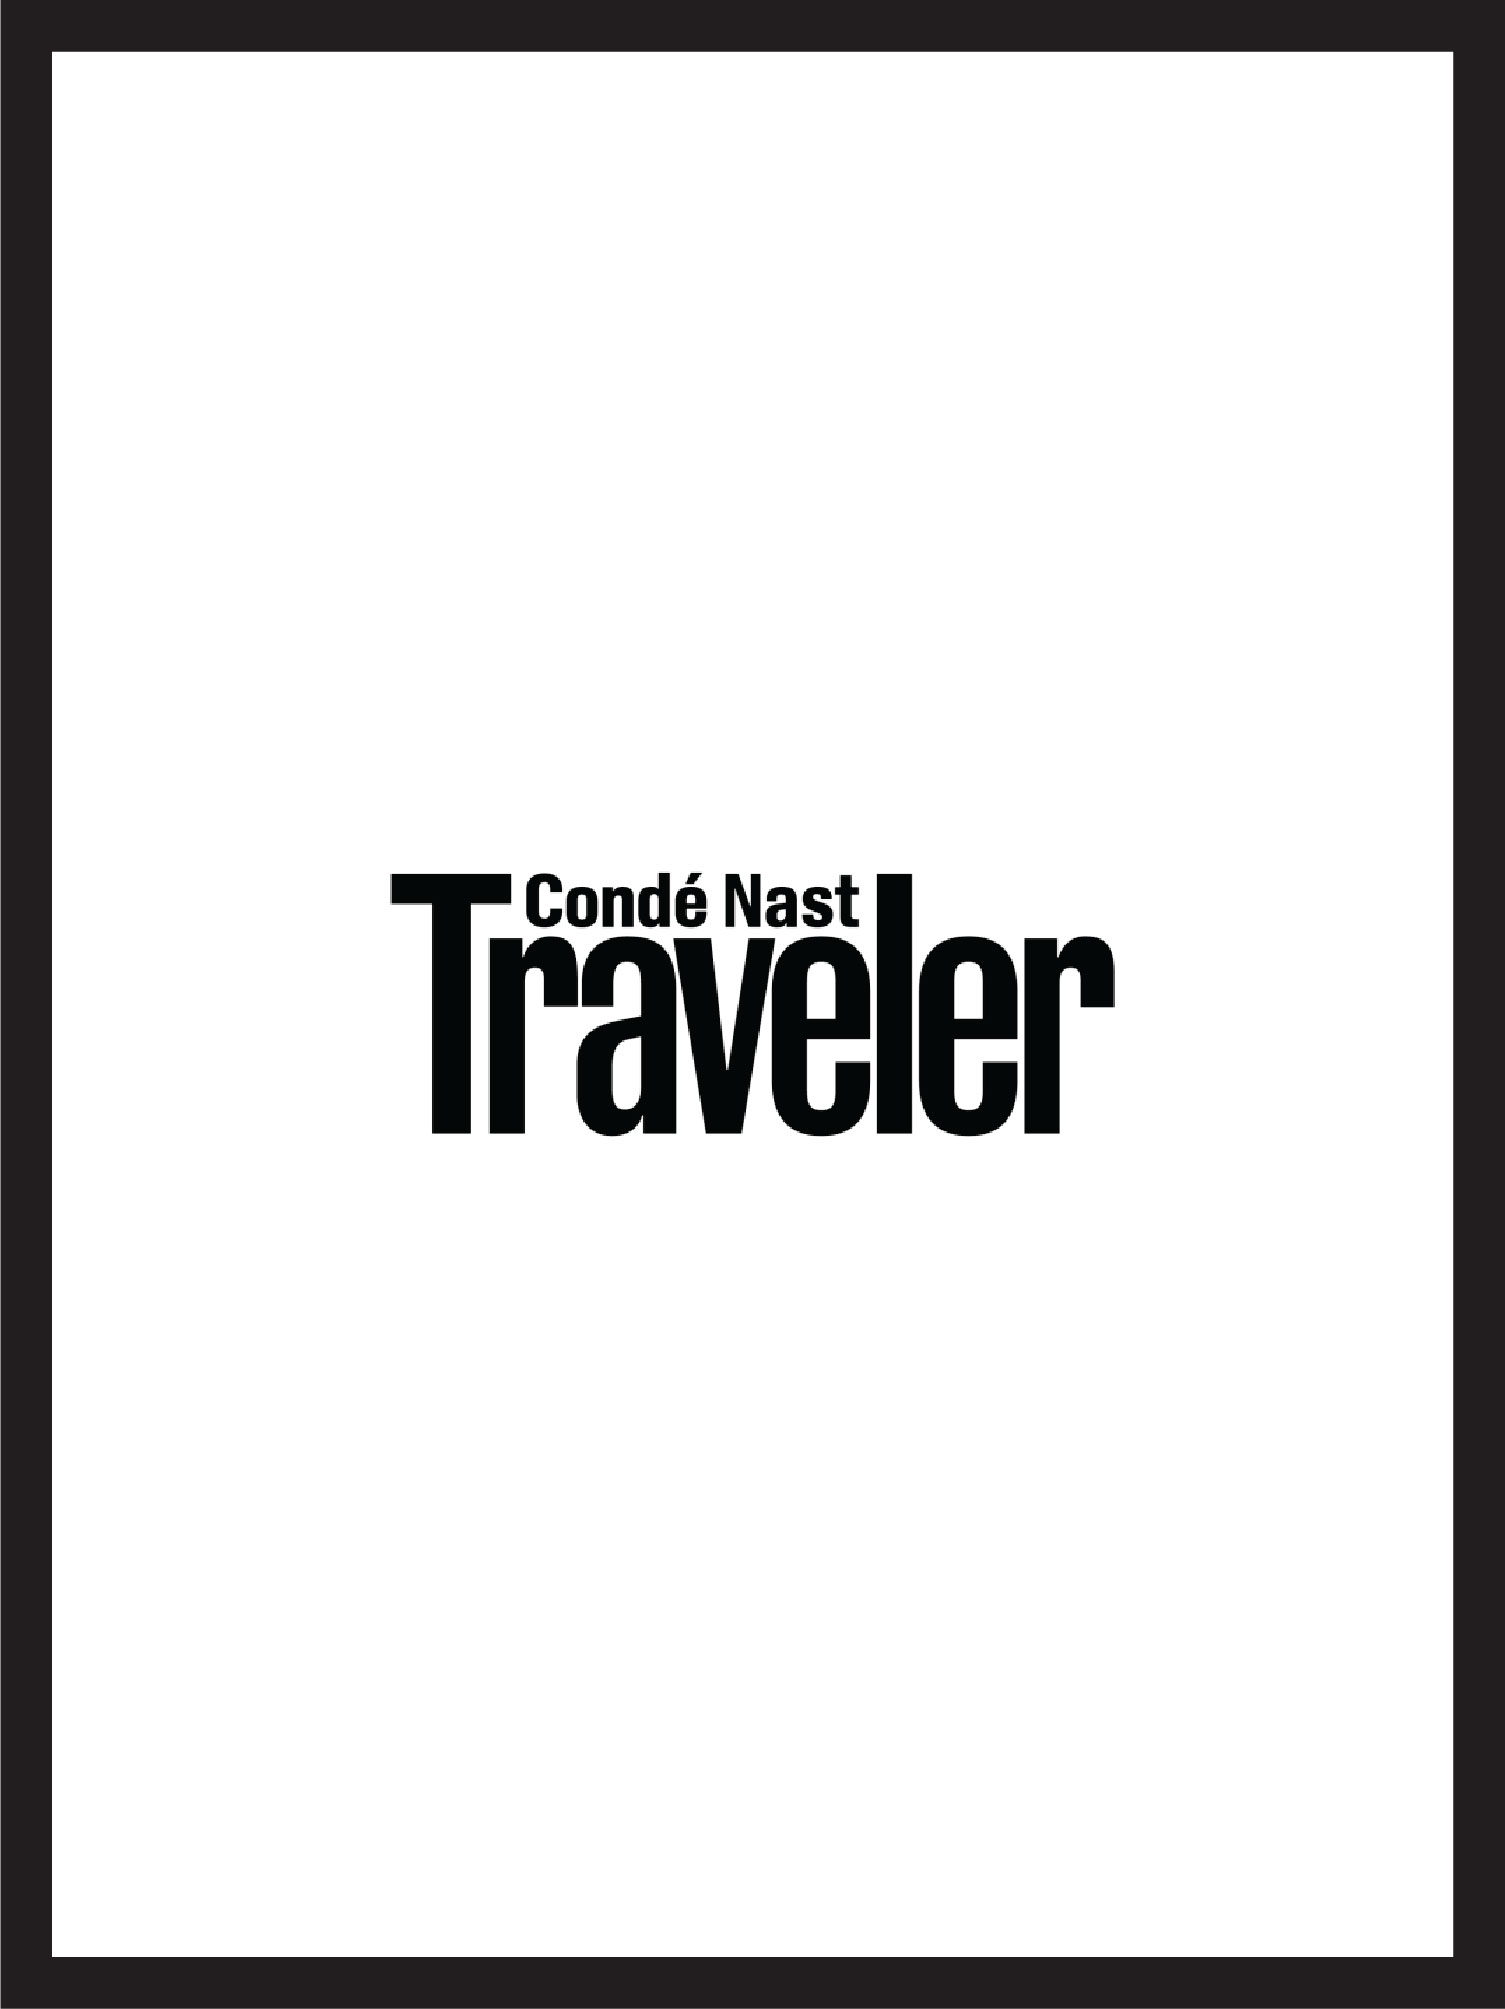 couverture et logo du magazine condé nast traveller